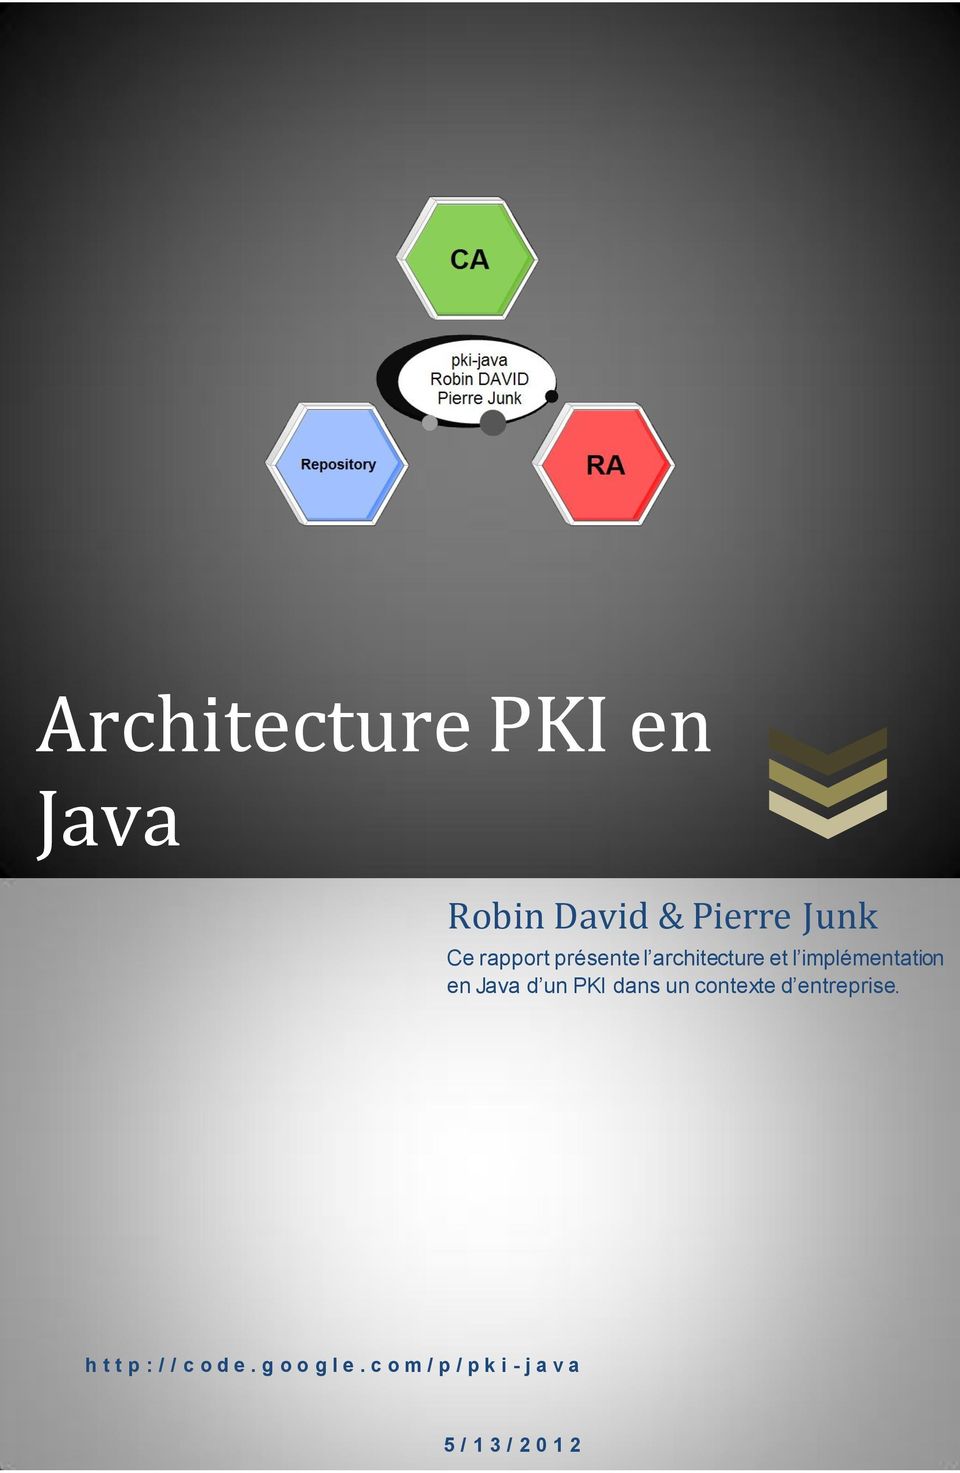 Java d un PKI dans un contexte d entreprise.